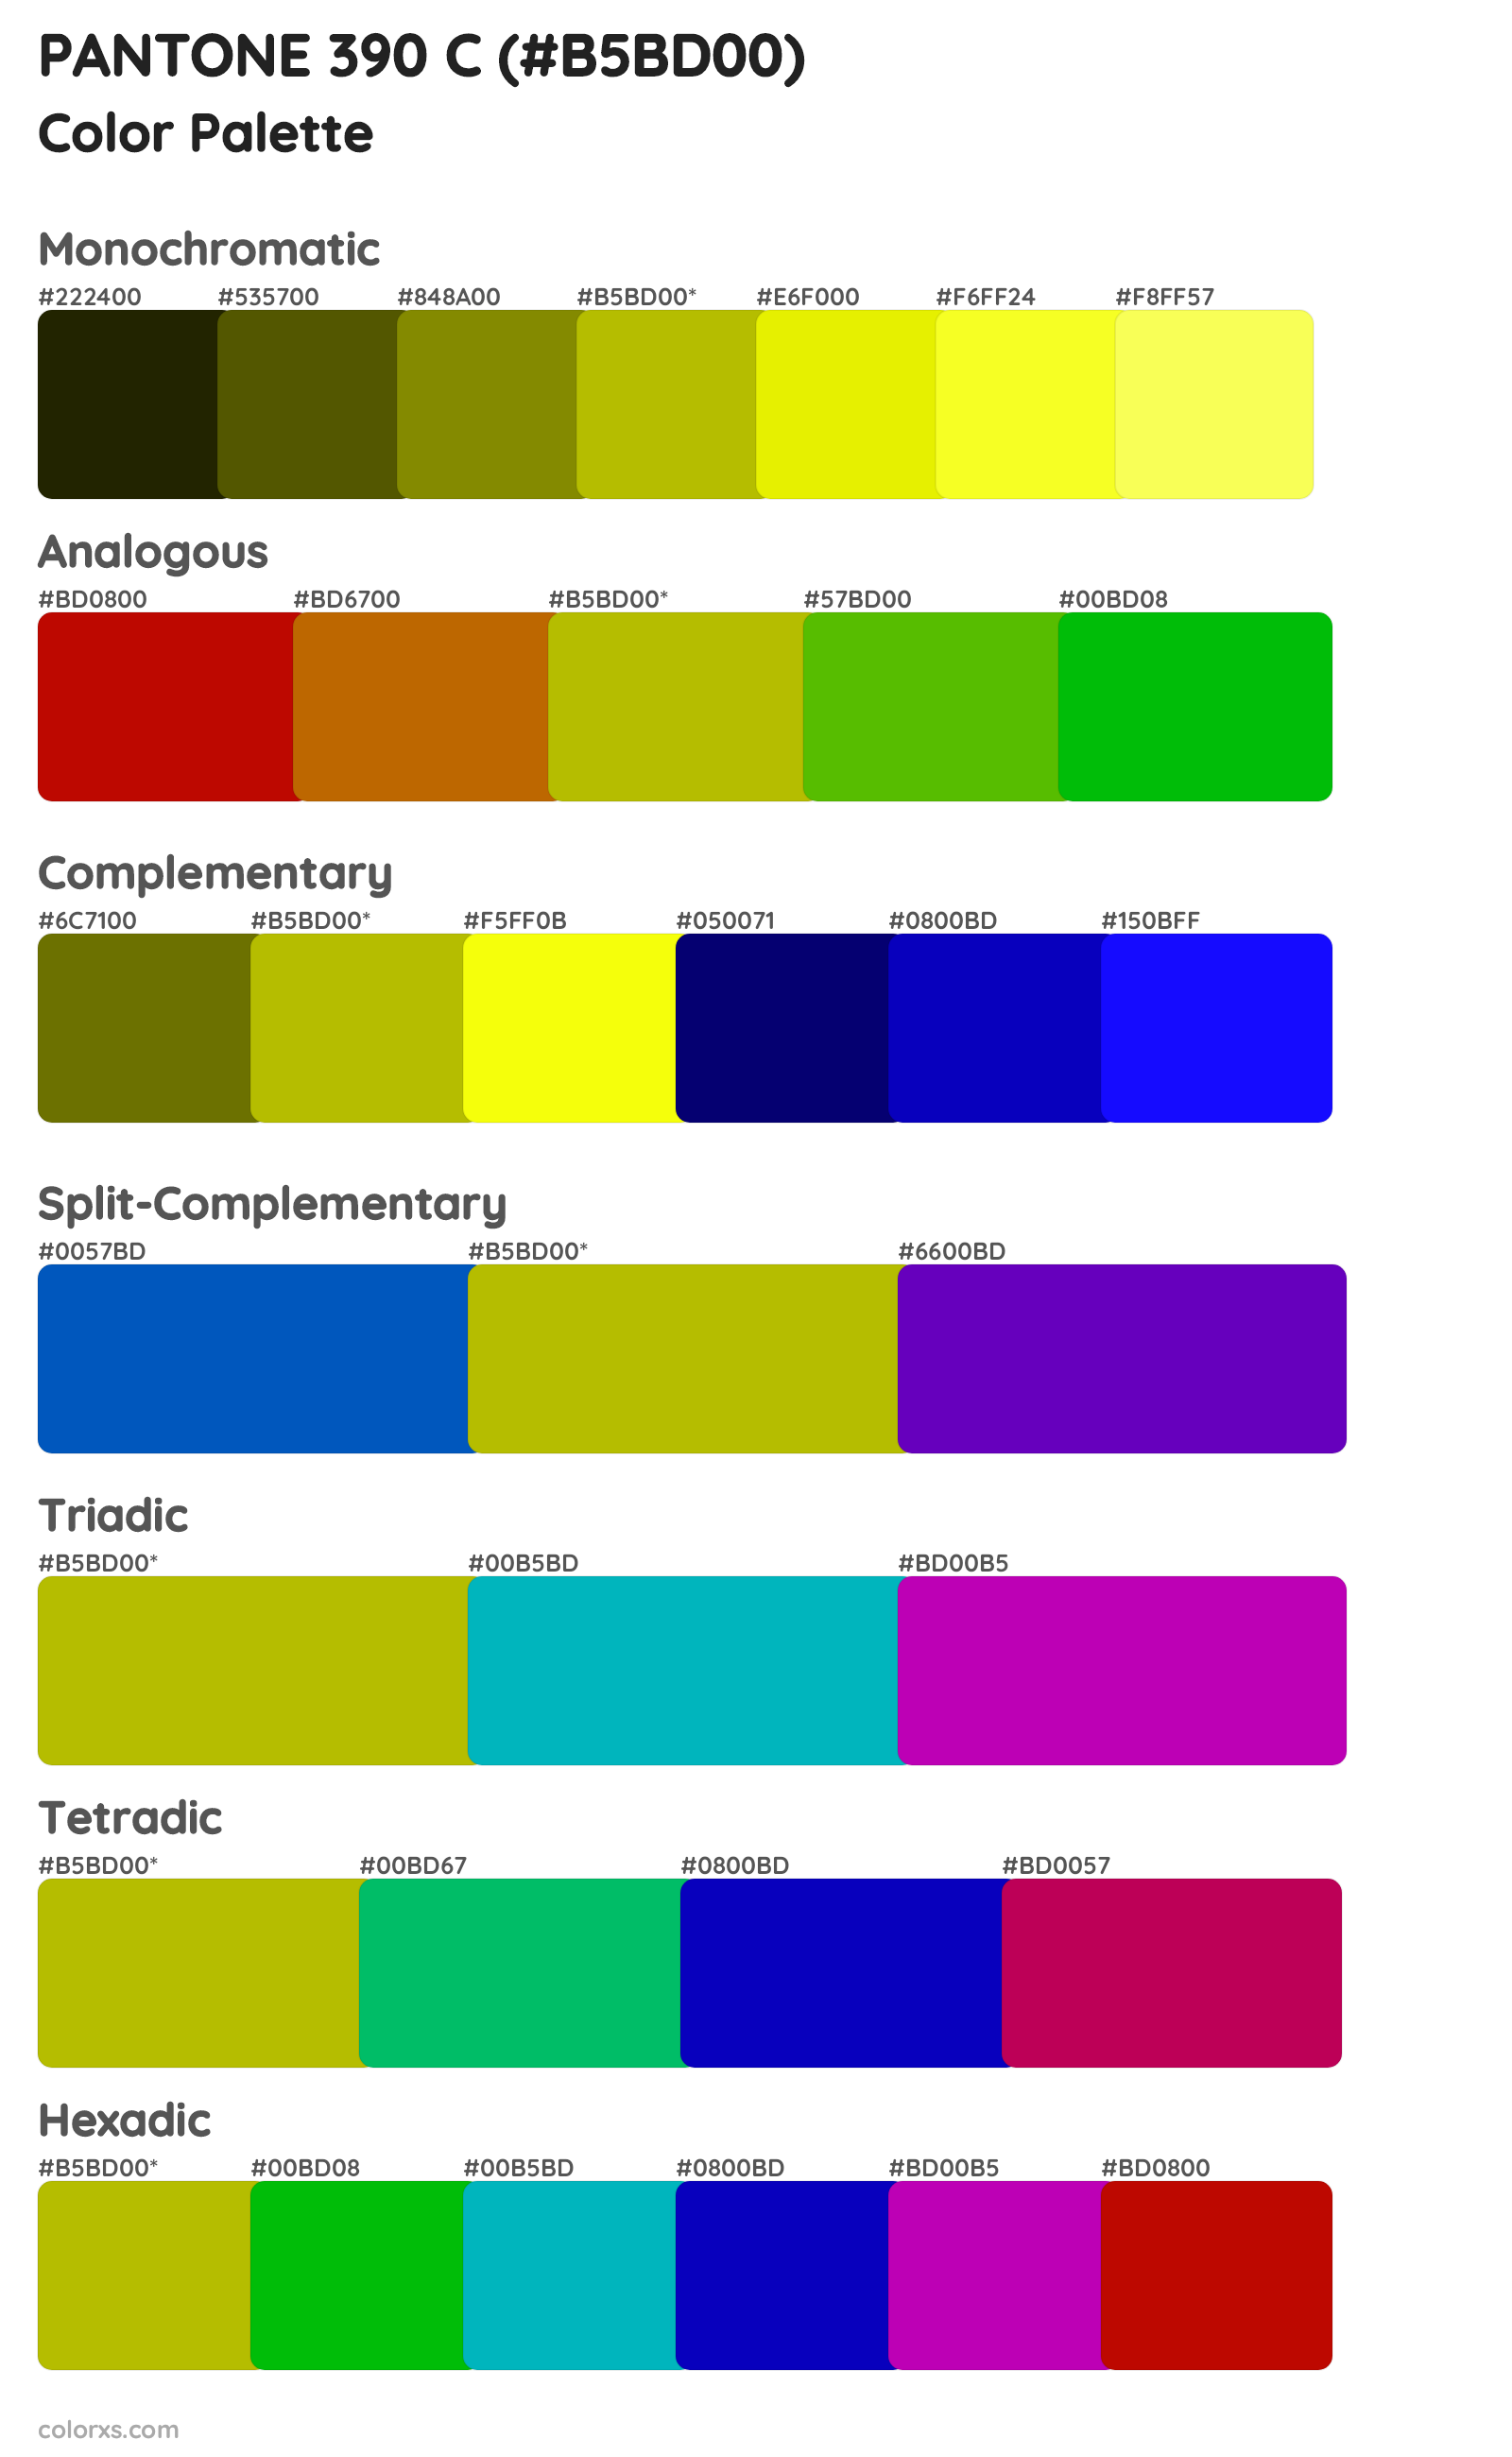 PANTONE 390 C Color Scheme Palettes